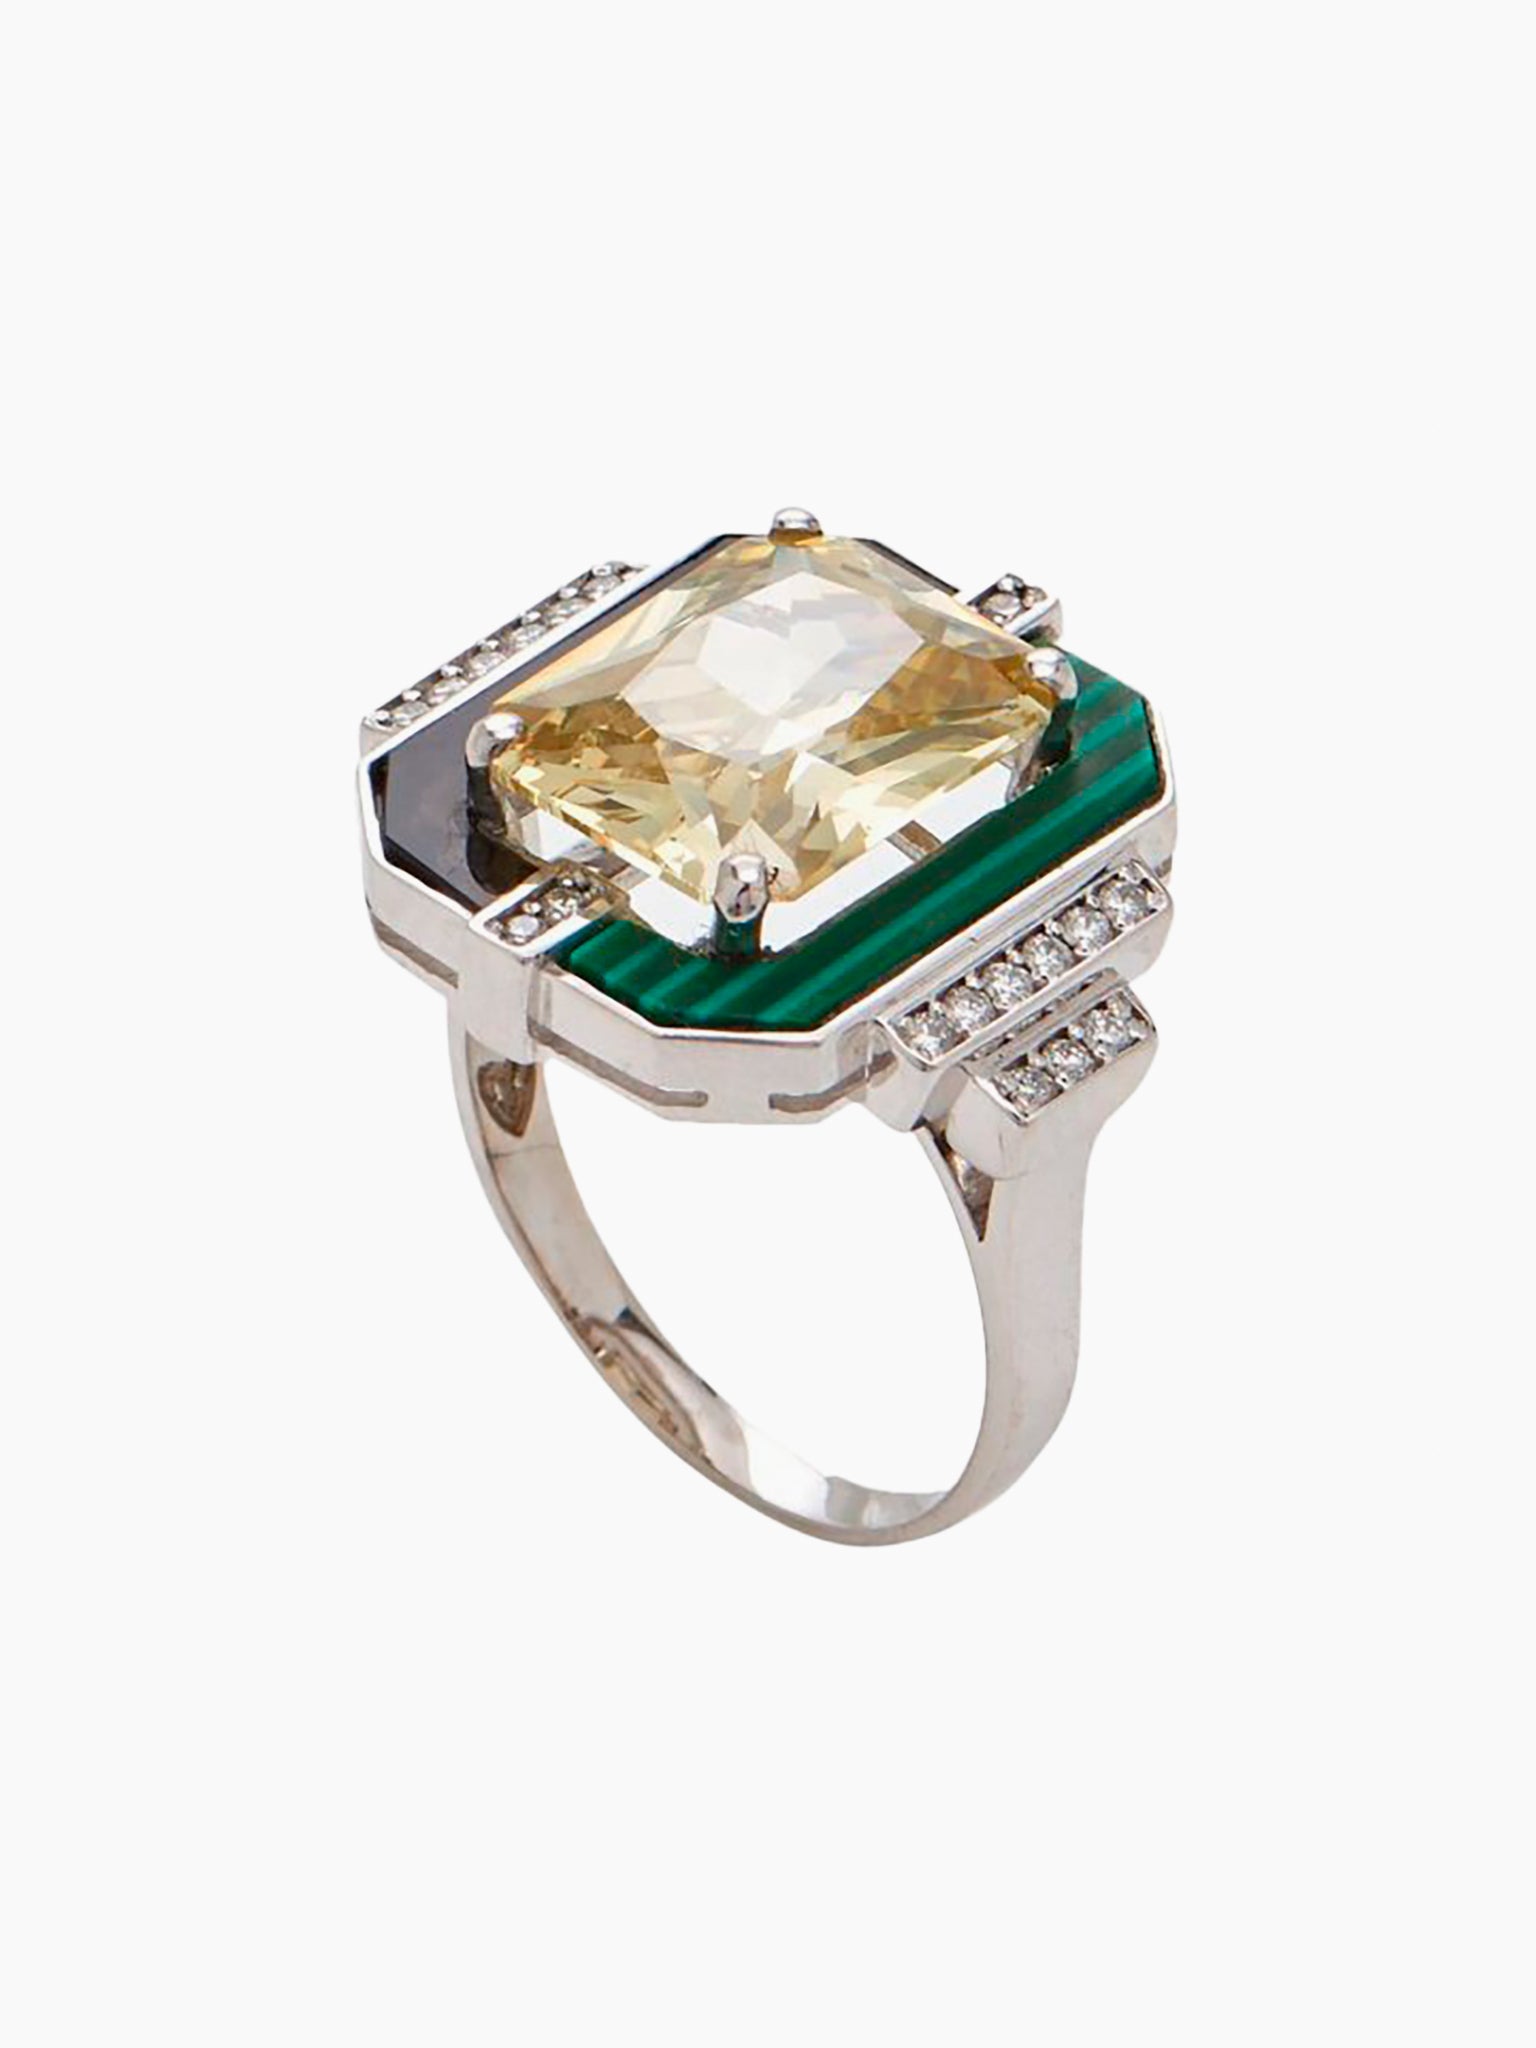 Diamonds & Golden Topaz Ring | Buy Online